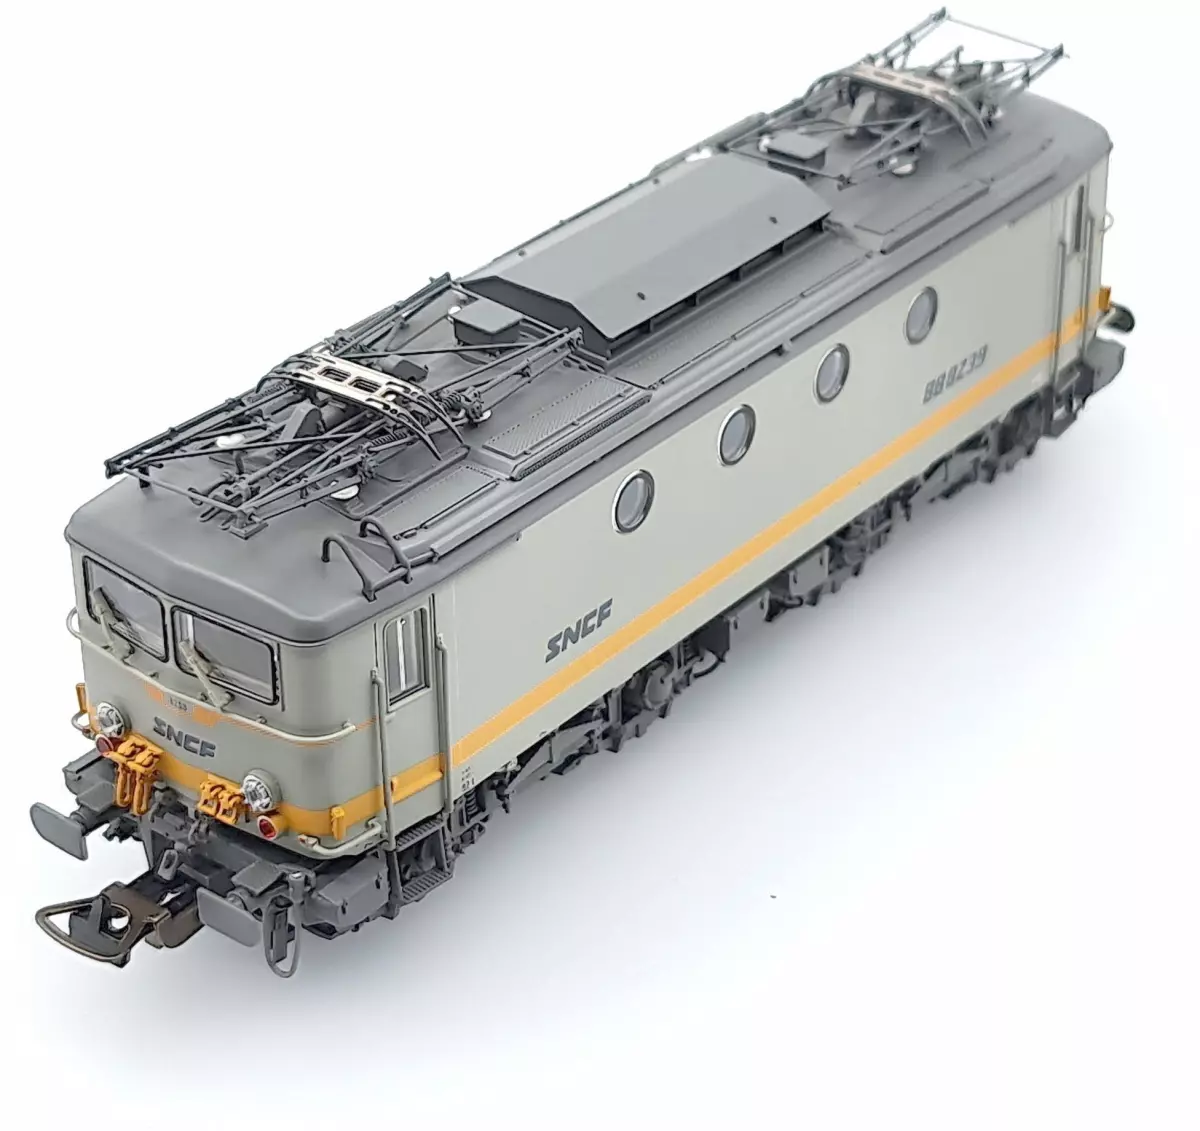 Locomotive Ã©lectrique BB 8100 BÃ©ton livrÃ©e blanche et ligne jaune